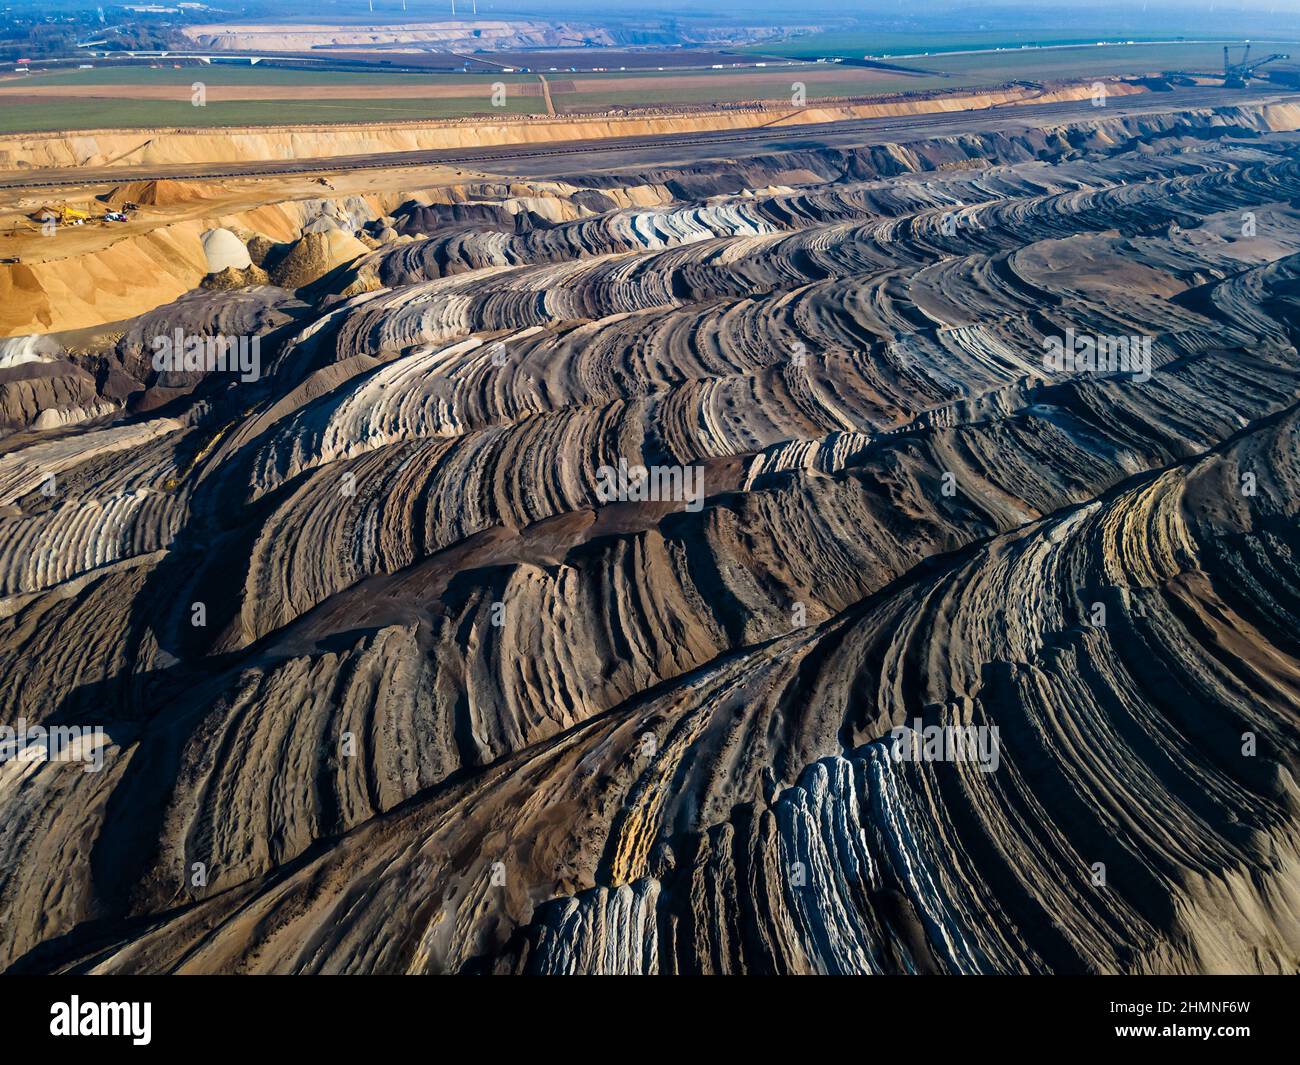 Matériel minier dans une mine de charbon brun à ciel ouvert près de Garzweiler, en Allemagne.Vue aérienne Banque D'Images